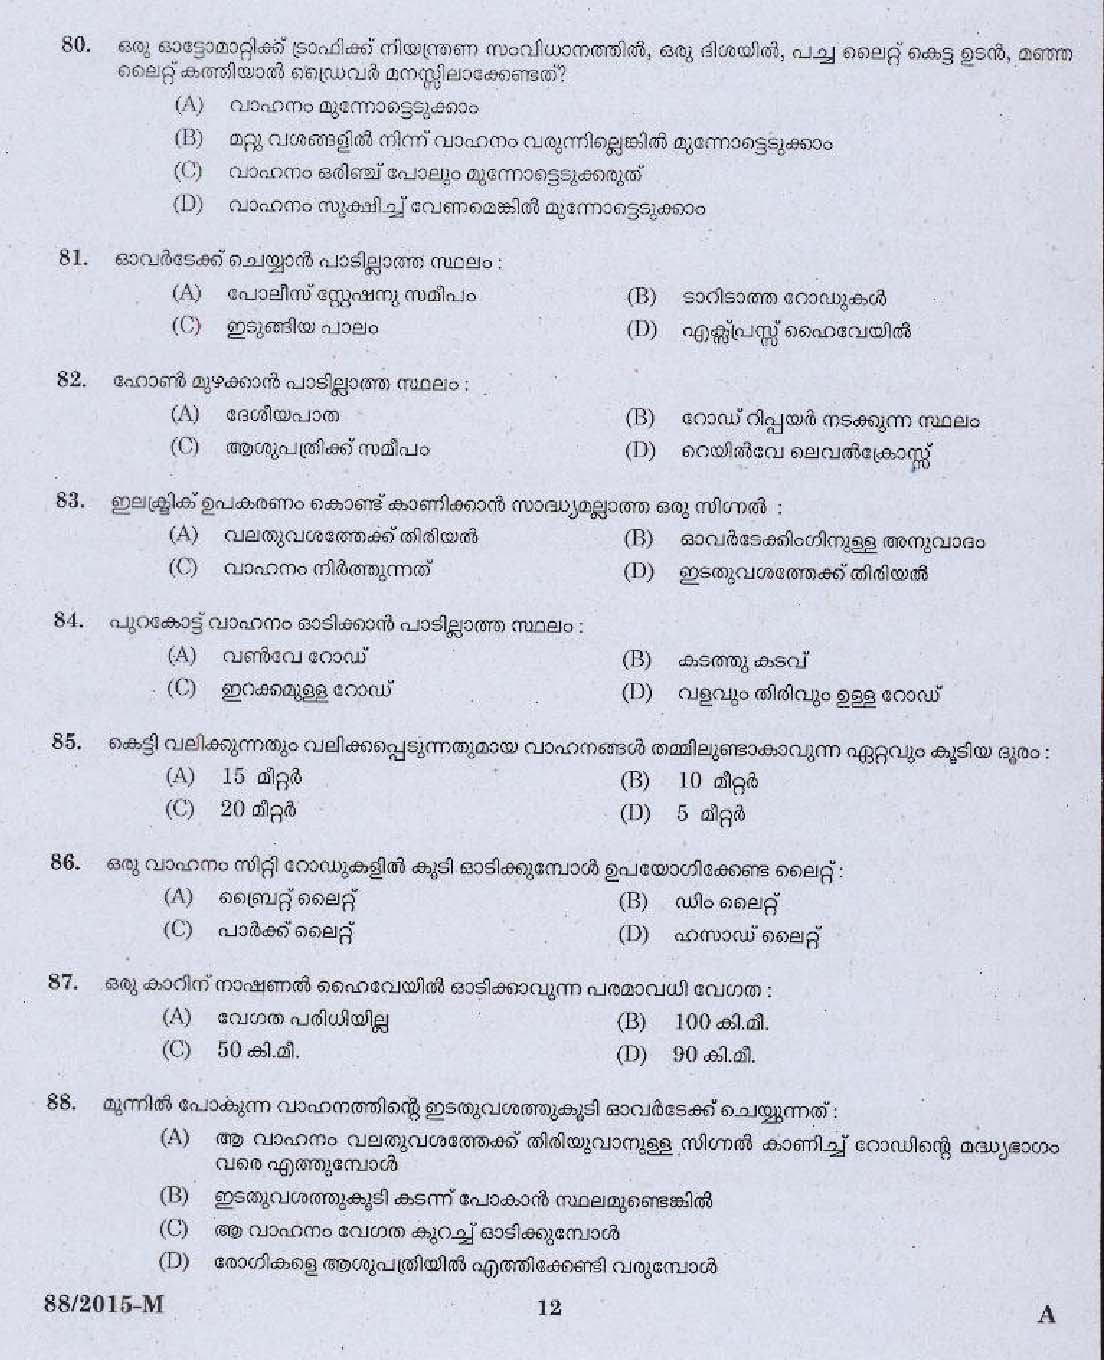 Kerala PSC Driver Grade II Exam 2015 Question Paper Code 882015 M 10